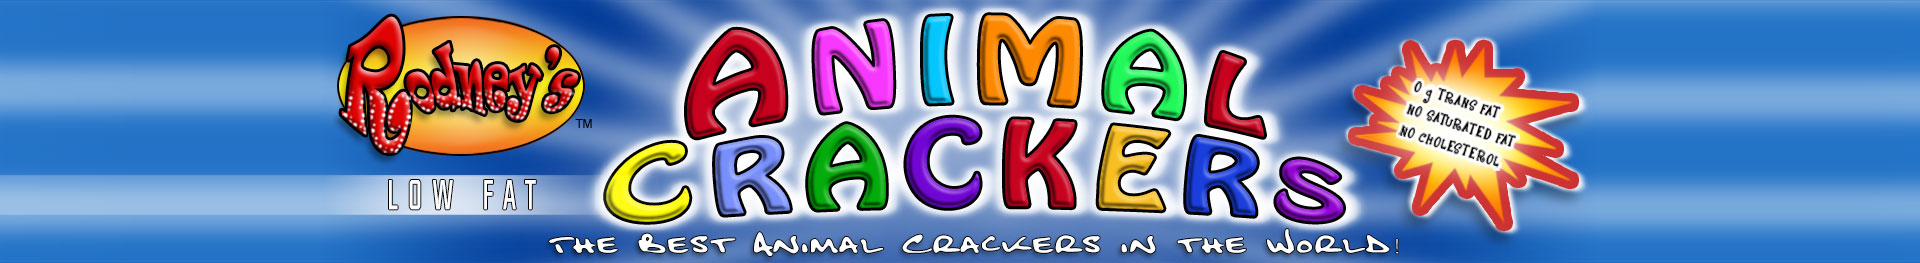 Rodney's Animal Crackers